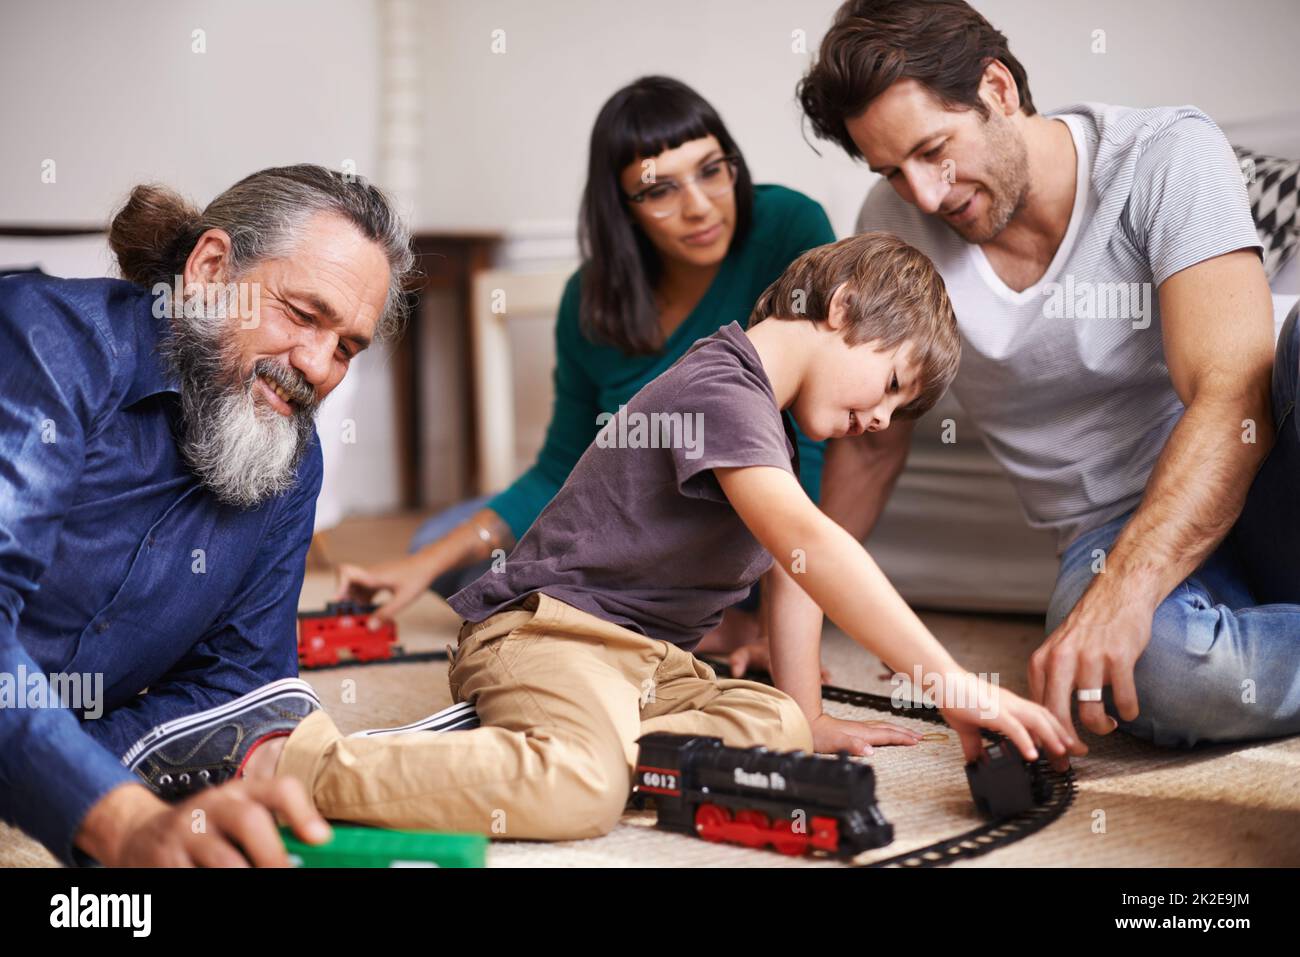 Détente en famille sur le chemin de fer. Prise de vue rognée d'un jeune enfant jouant avec un train pendant que sa famille regarde. Banque D'Images